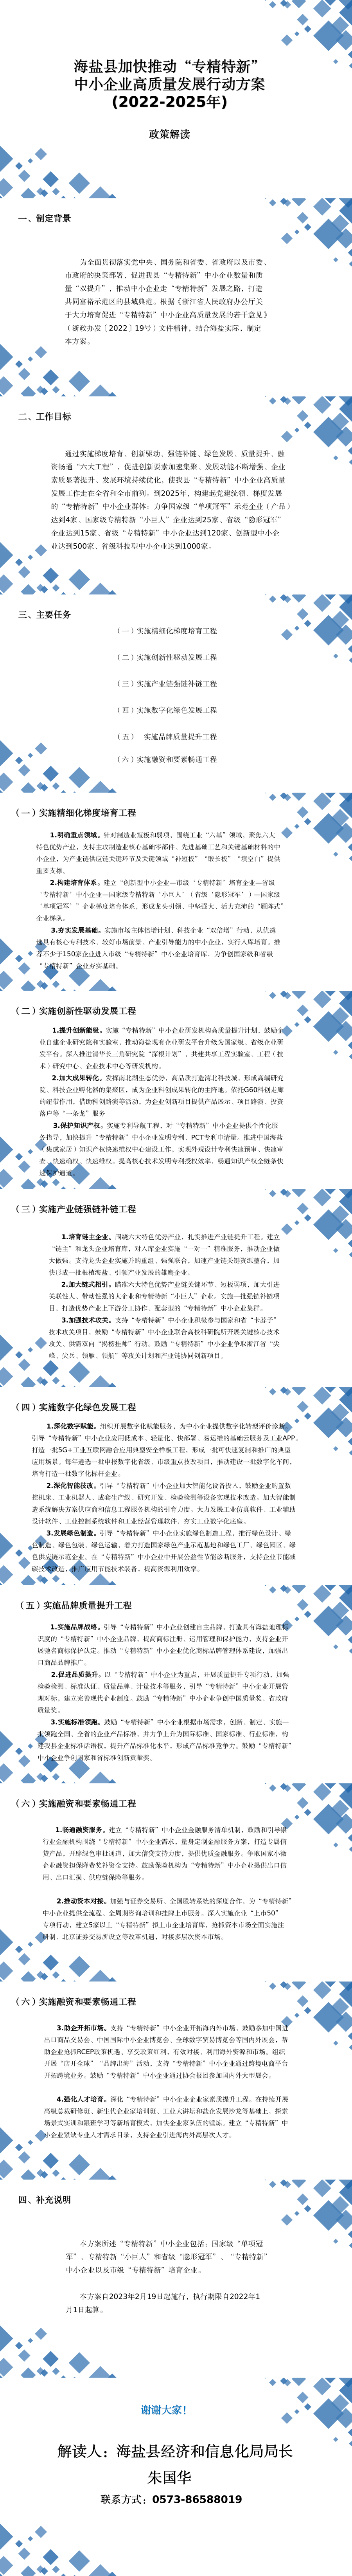 海盐县加快推动“专精特新”中小企业高质量发展行动方案(2022-2025年)政策解读(1).png